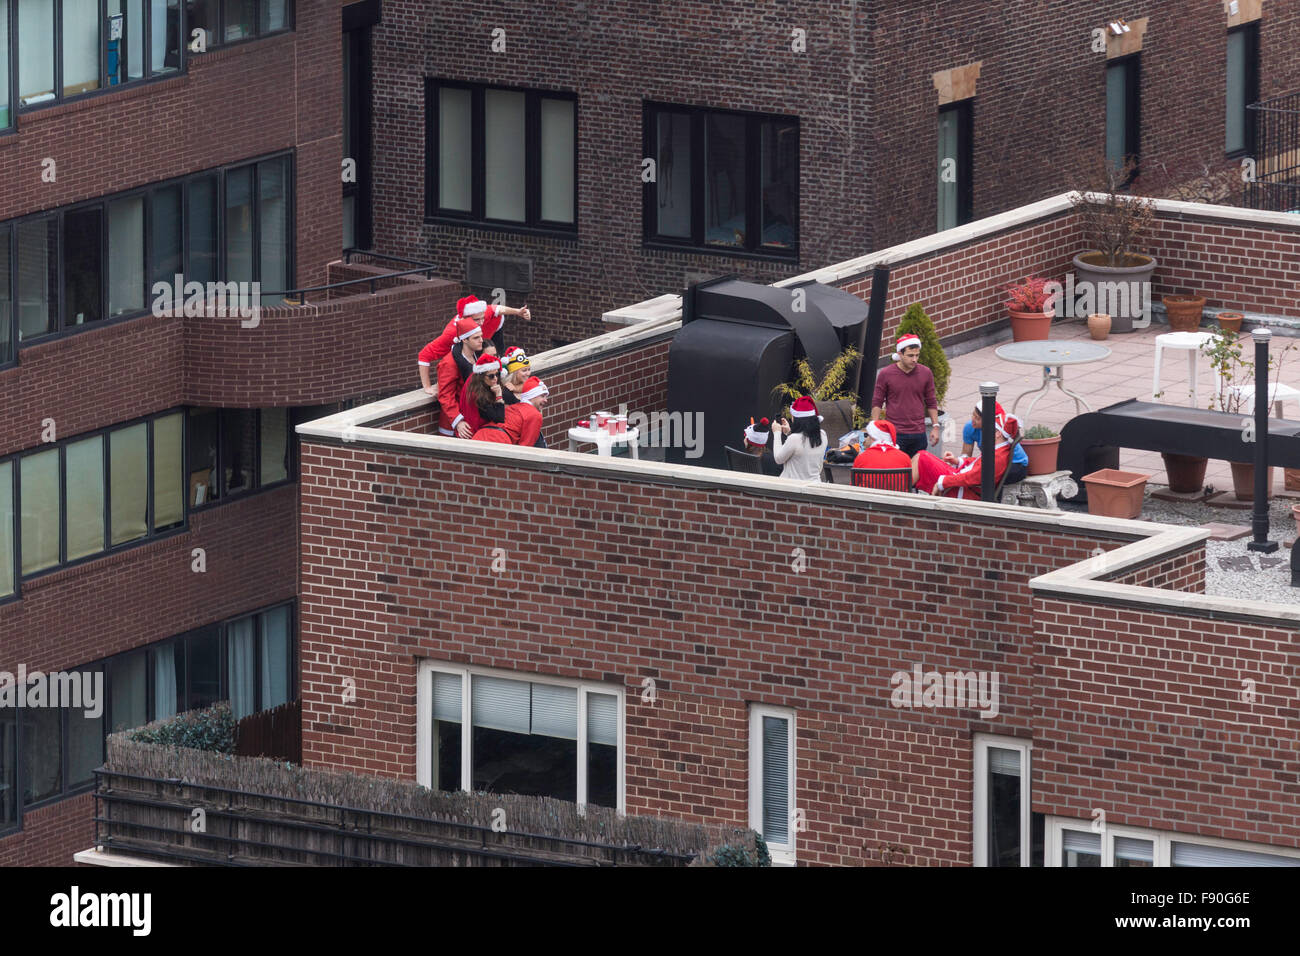 La città di New York, Stati Uniti d'America. Il 12 dicembre 2015. SantaCon è diventato molto popolare di pub crawl. Questo gruppo di Santa inizia la loro attività da anni su una falda di tetto in Midtown Manhattan. Credito: Patti McConville/Alamy Live News Foto Stock